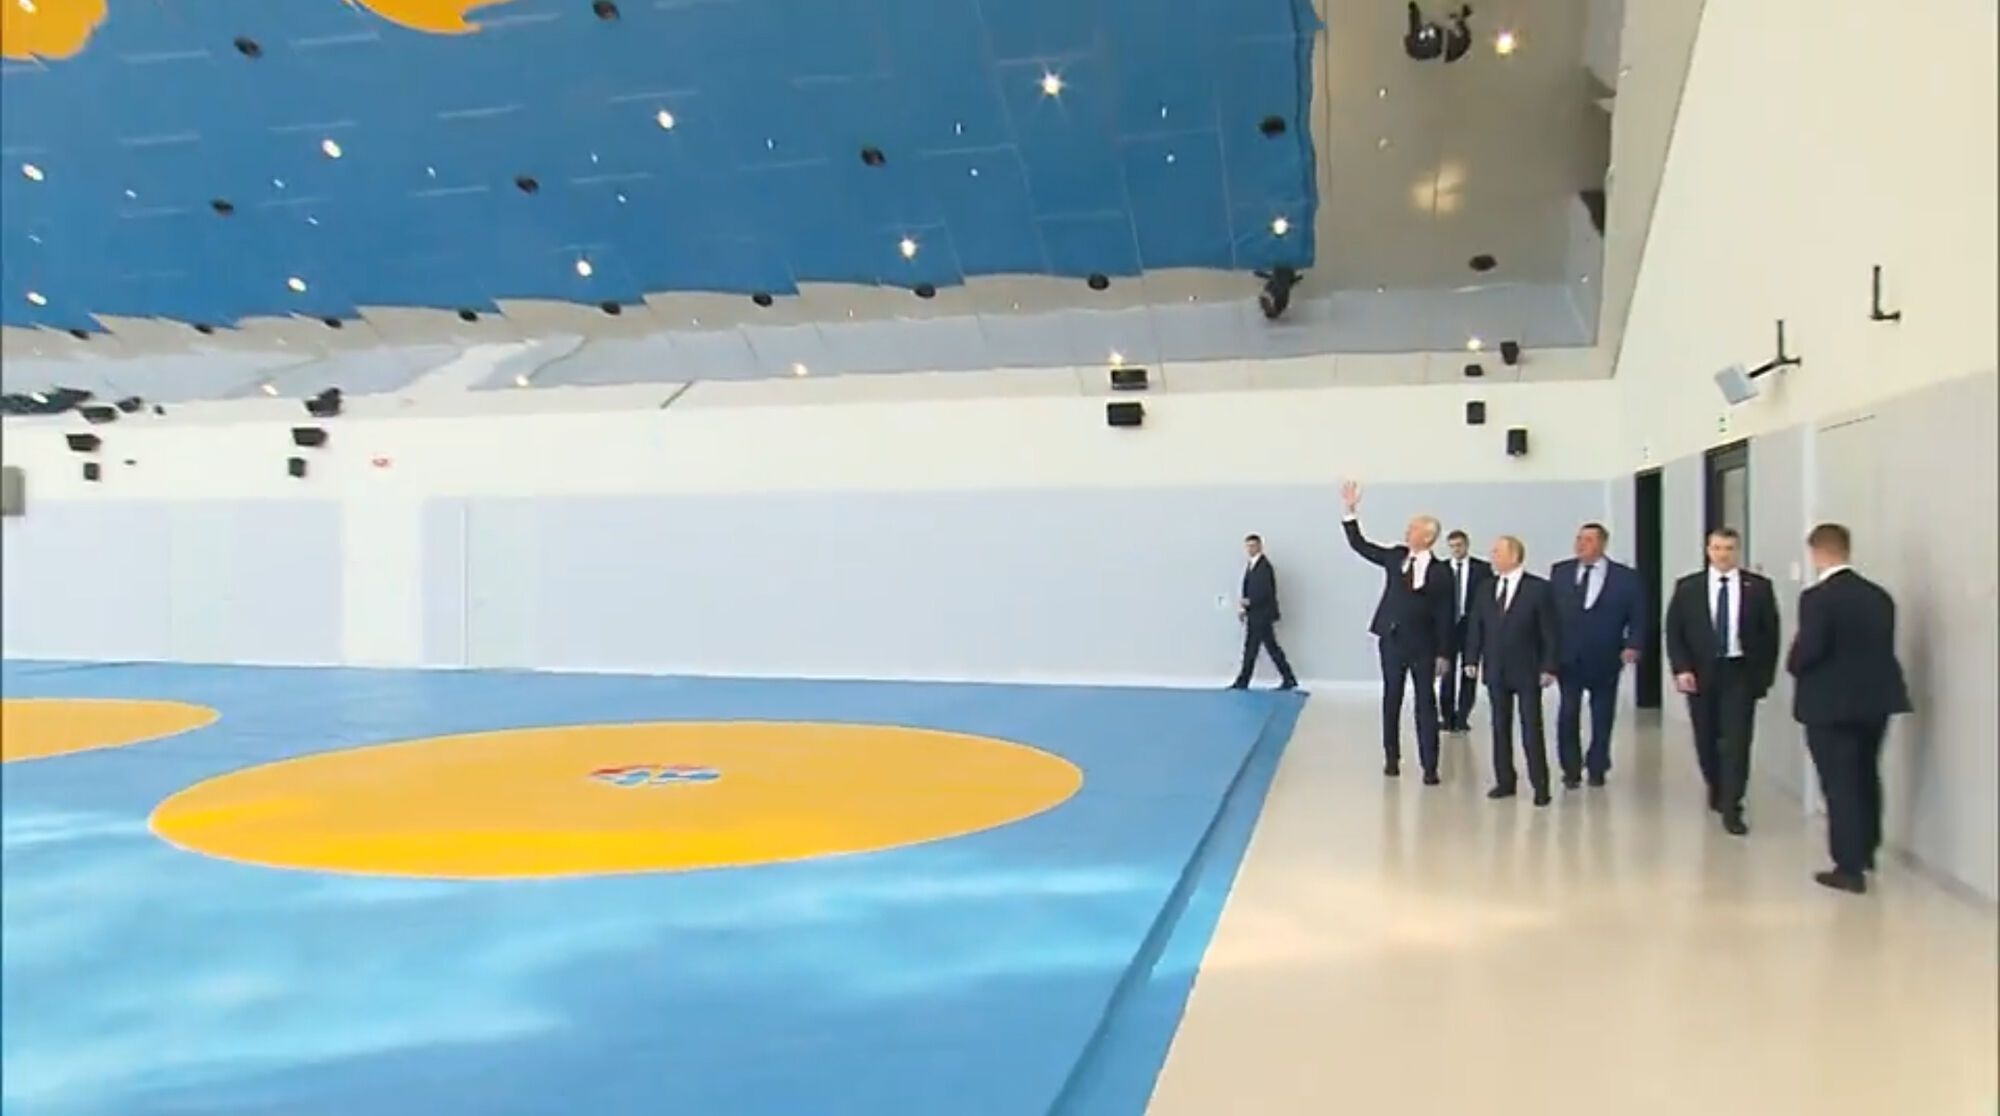 Путін зʼявився на публіці у залі в жовто-синіх кольорах: знову був помітний нюанс з правою рукою. Відео